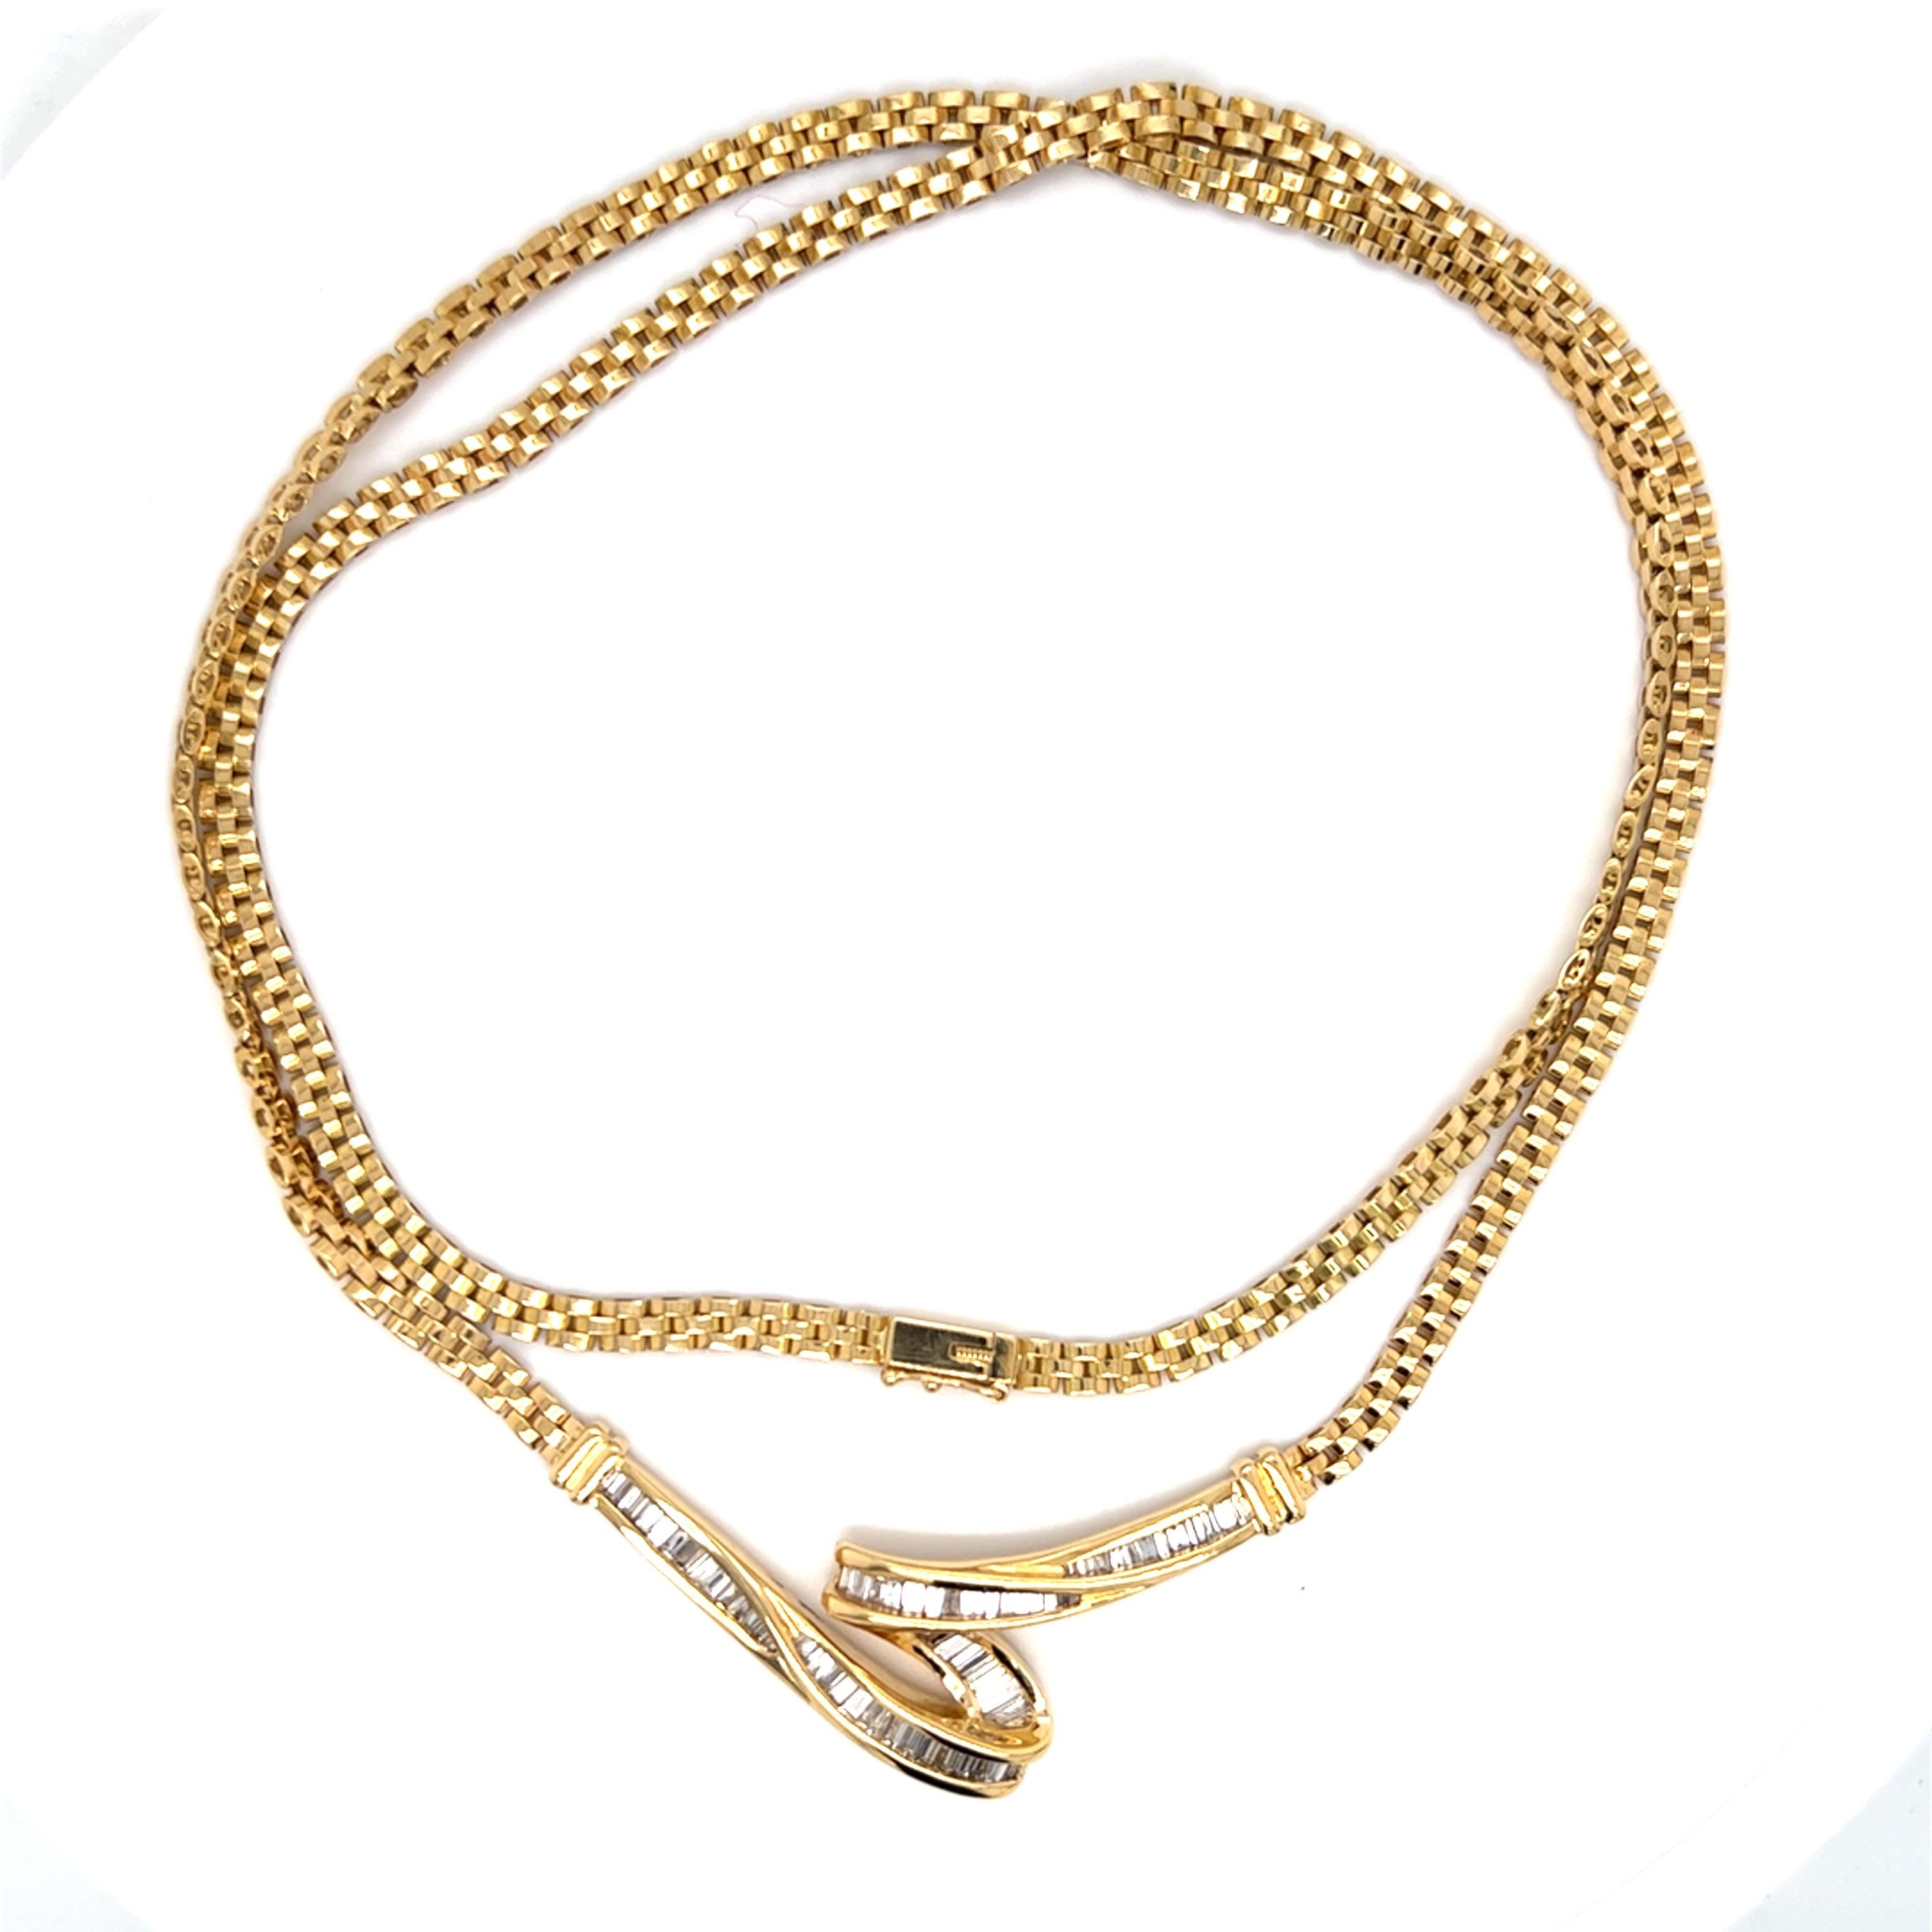 Baguette Cut Freeform Baguette Diamond Pendant Necklace in 18K Yellow Gold